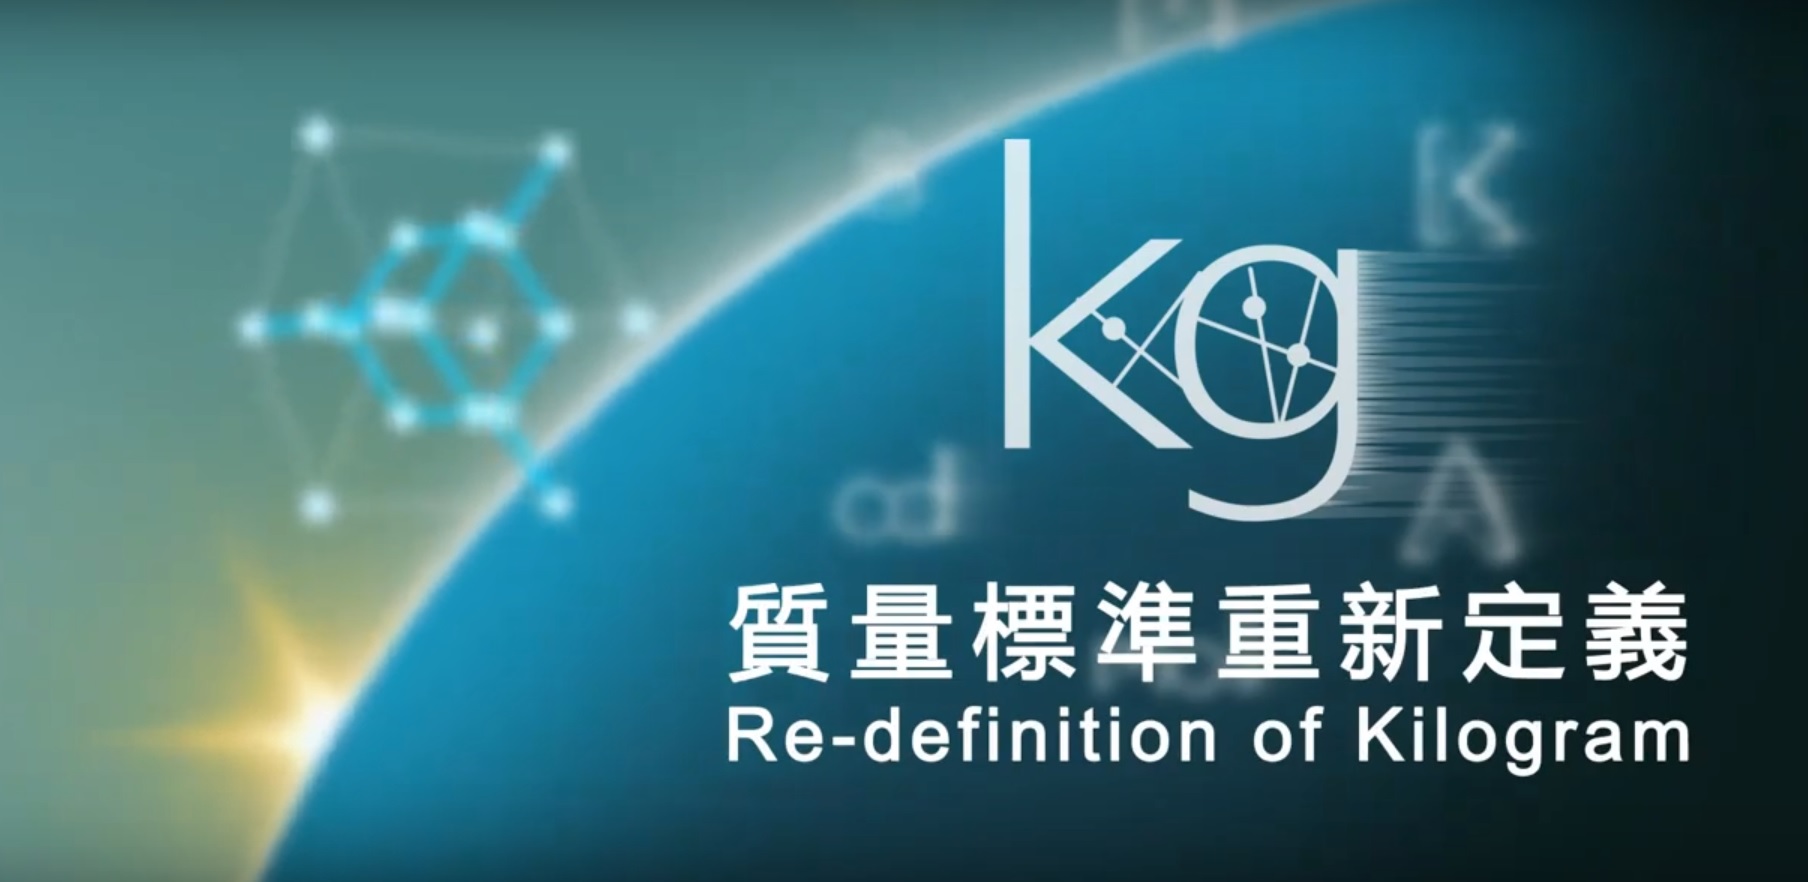 Video link:redefinition of kg